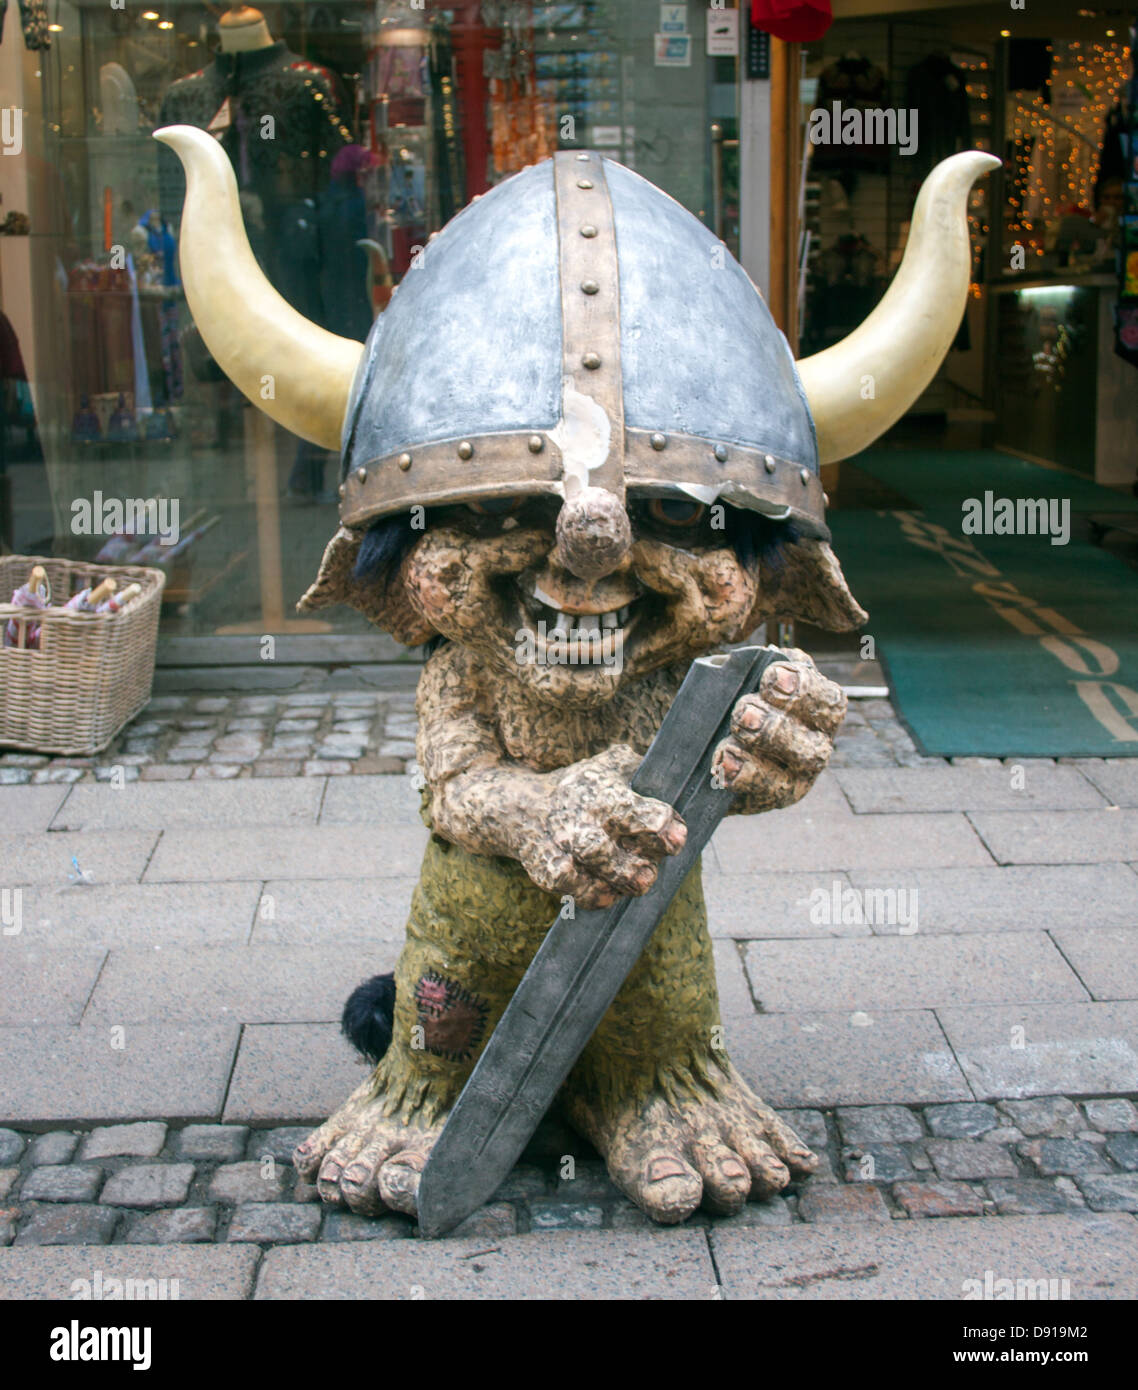 Troll Viking statue outside a store in Copenhagen Denmark Stock Photo